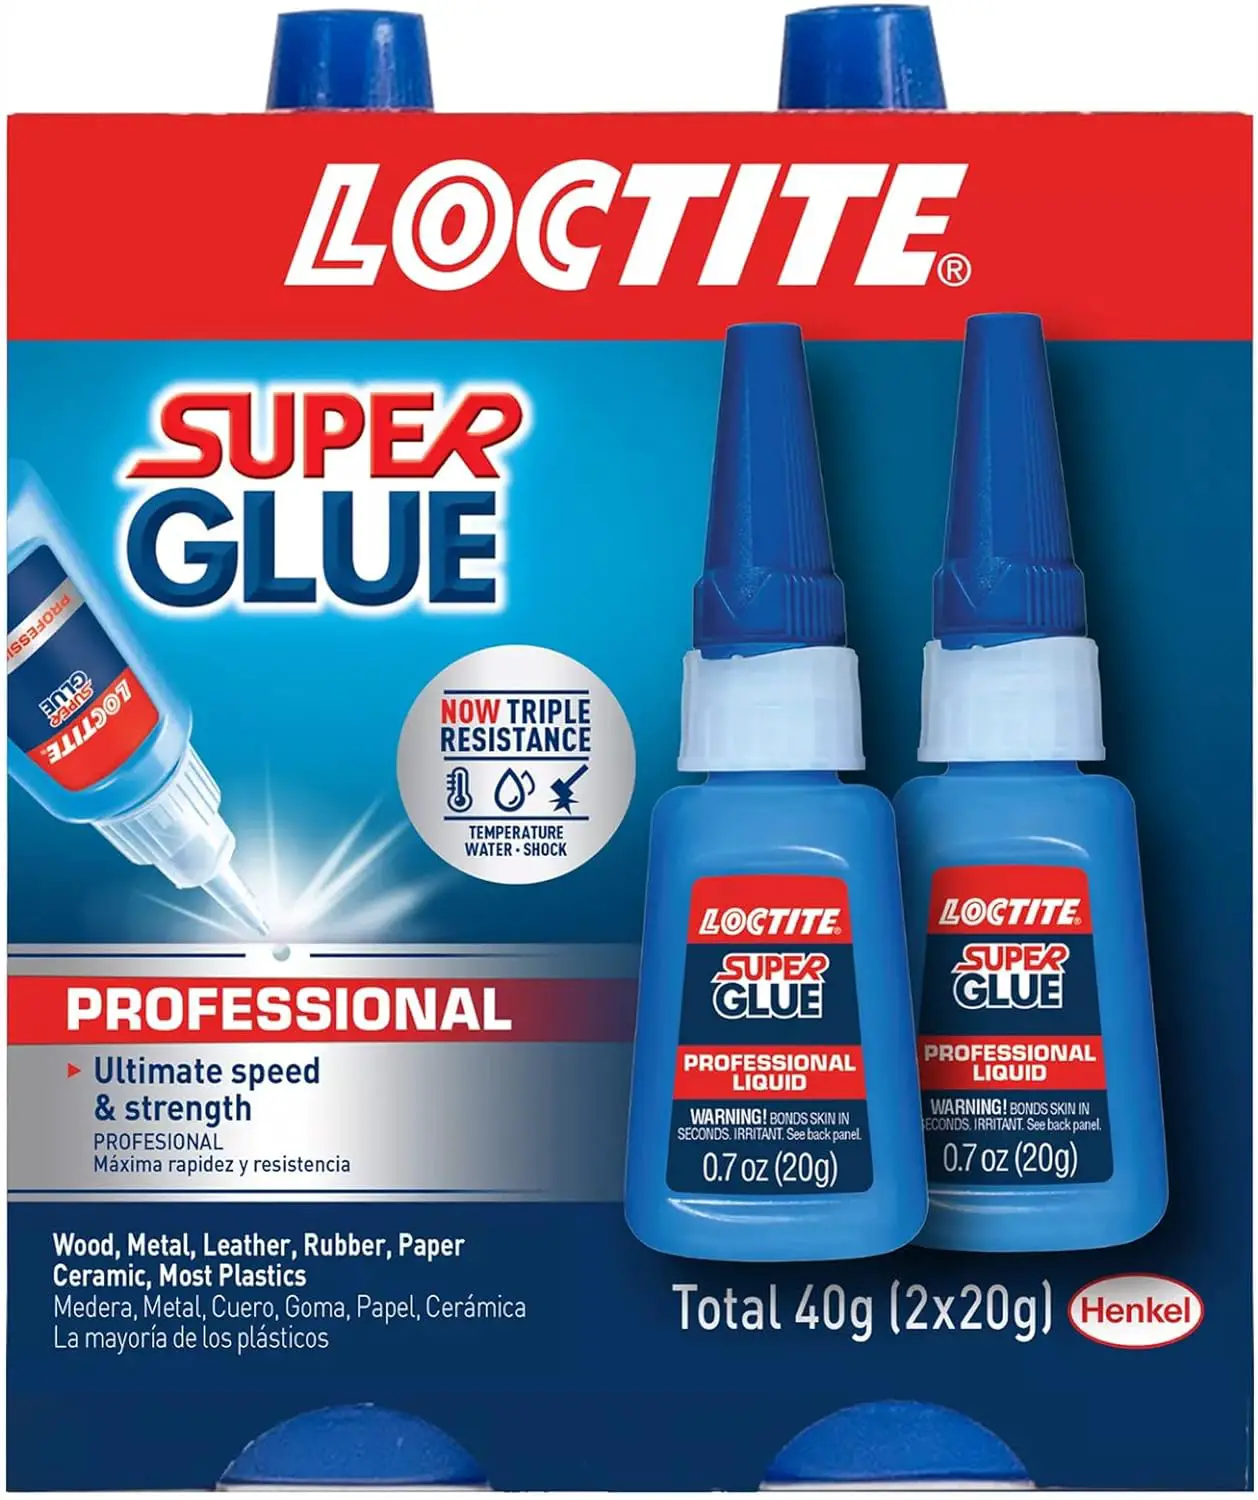 Loctite Liquid Professional Super Glue